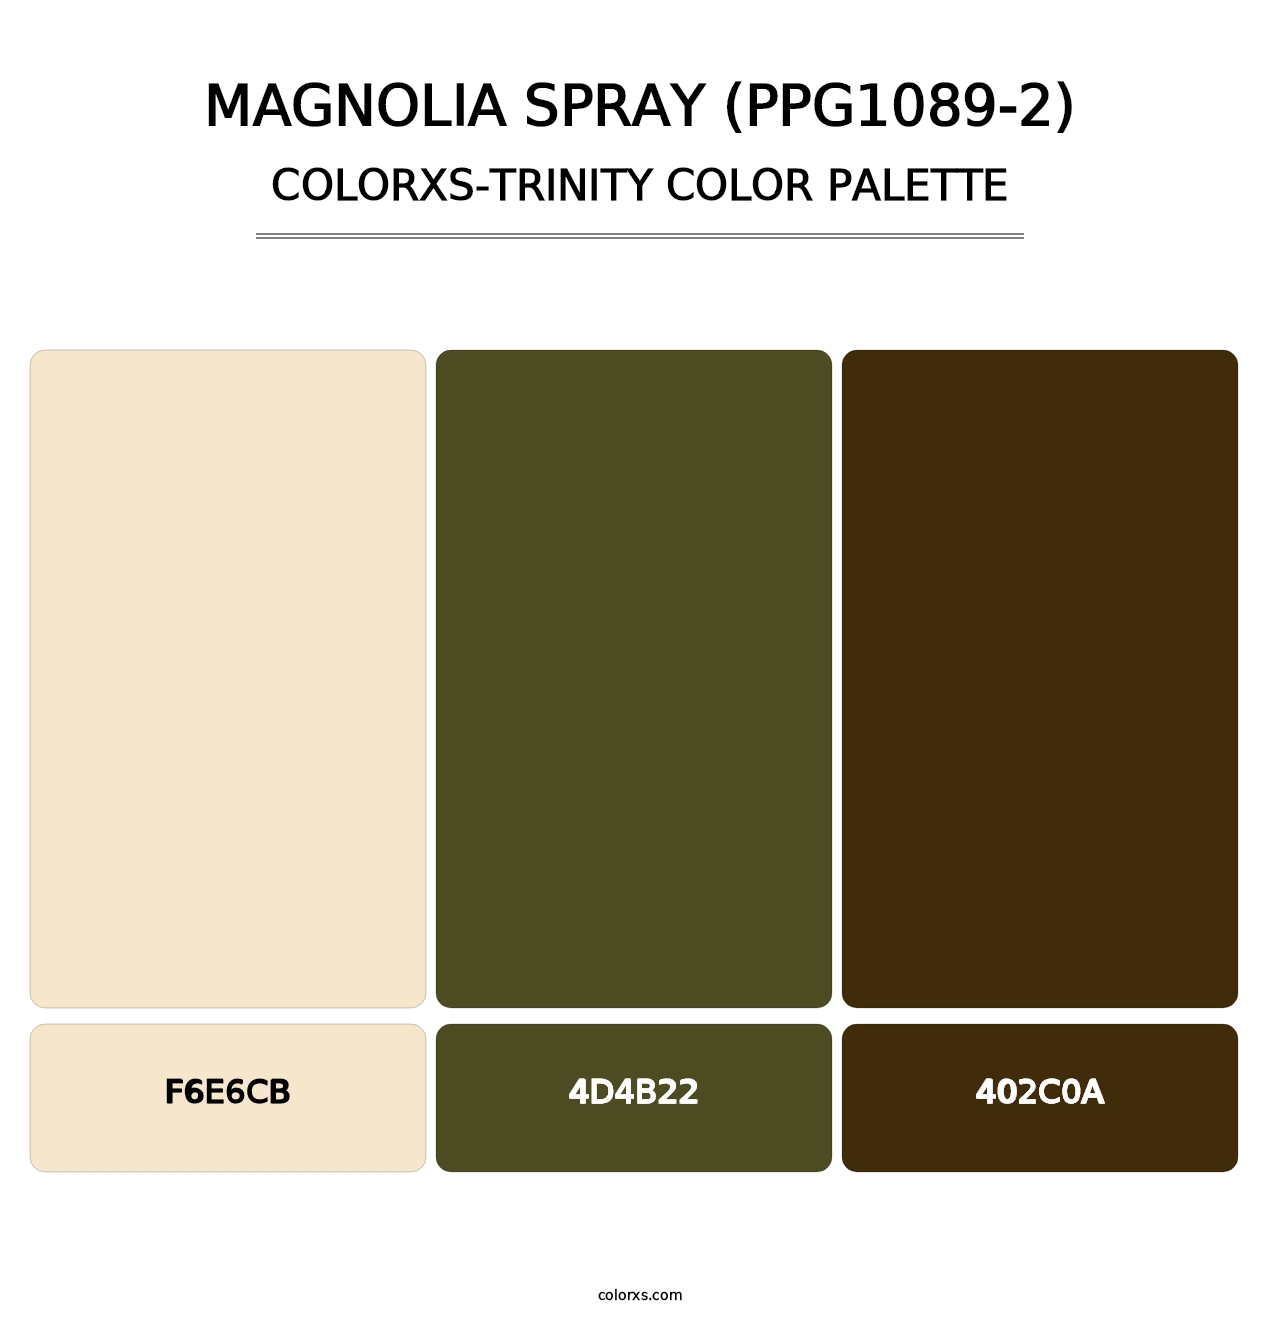 Magnolia Spray (PPG1089-2) - Colorxs Trinity Palette